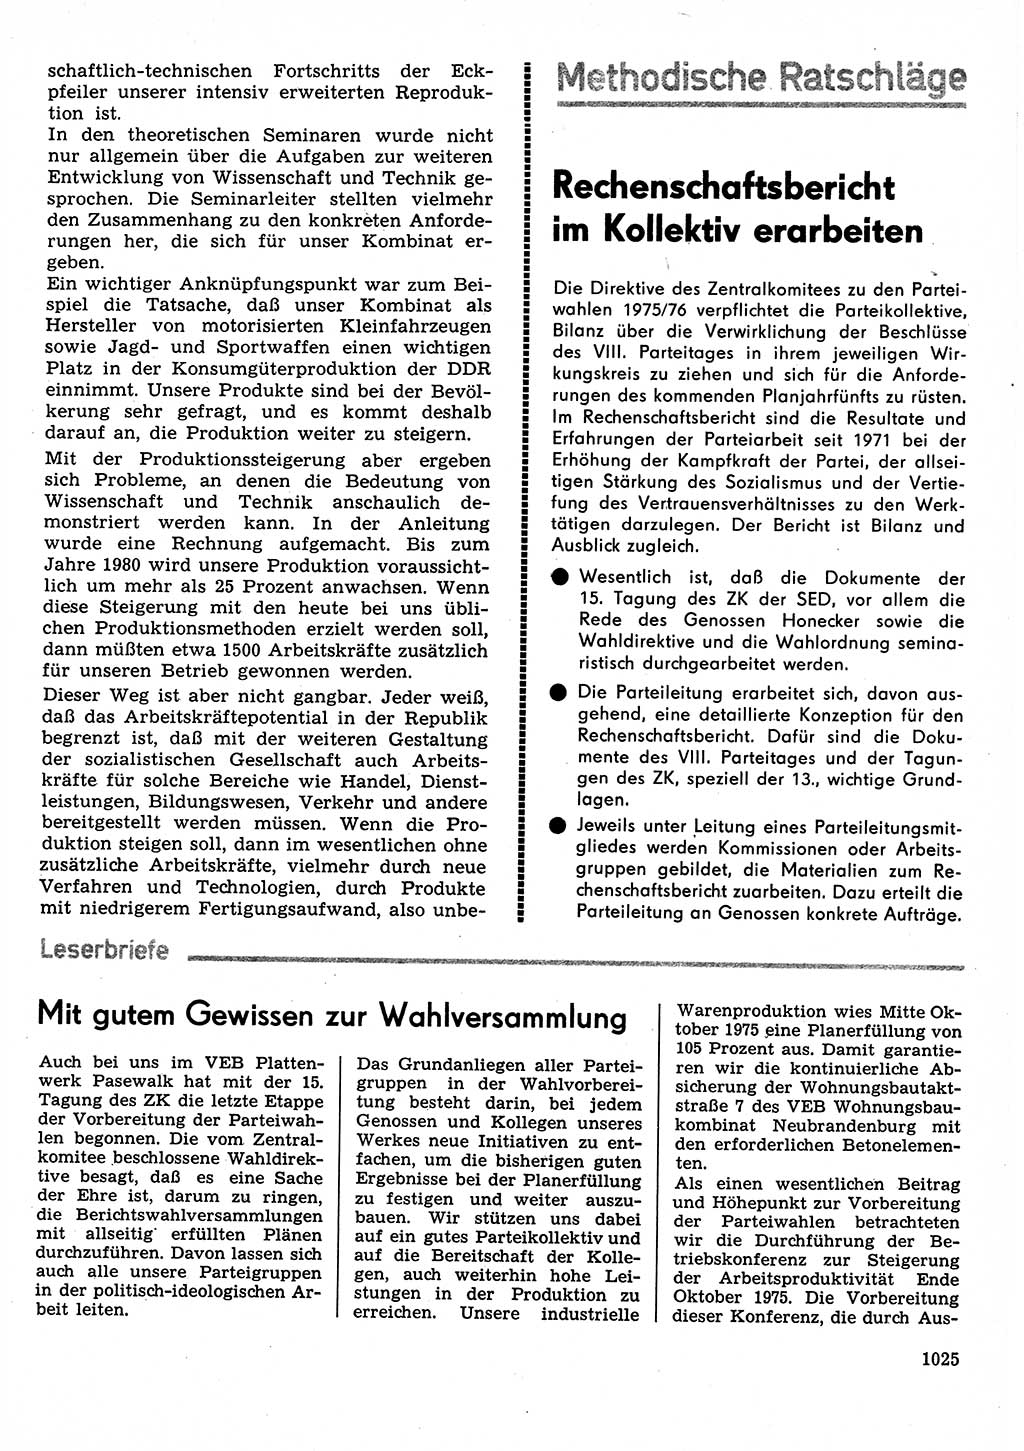 Neuer Weg (NW), Organ des Zentralkomitees (ZK) der SED (Sozialistische Einheitspartei Deutschlands) für Fragen des Parteilebens, 30. Jahrgang [Deutsche Demokratische Republik (DDR)] 1975, Seite 1025 (NW ZK SED DDR 1975, S. 1025)